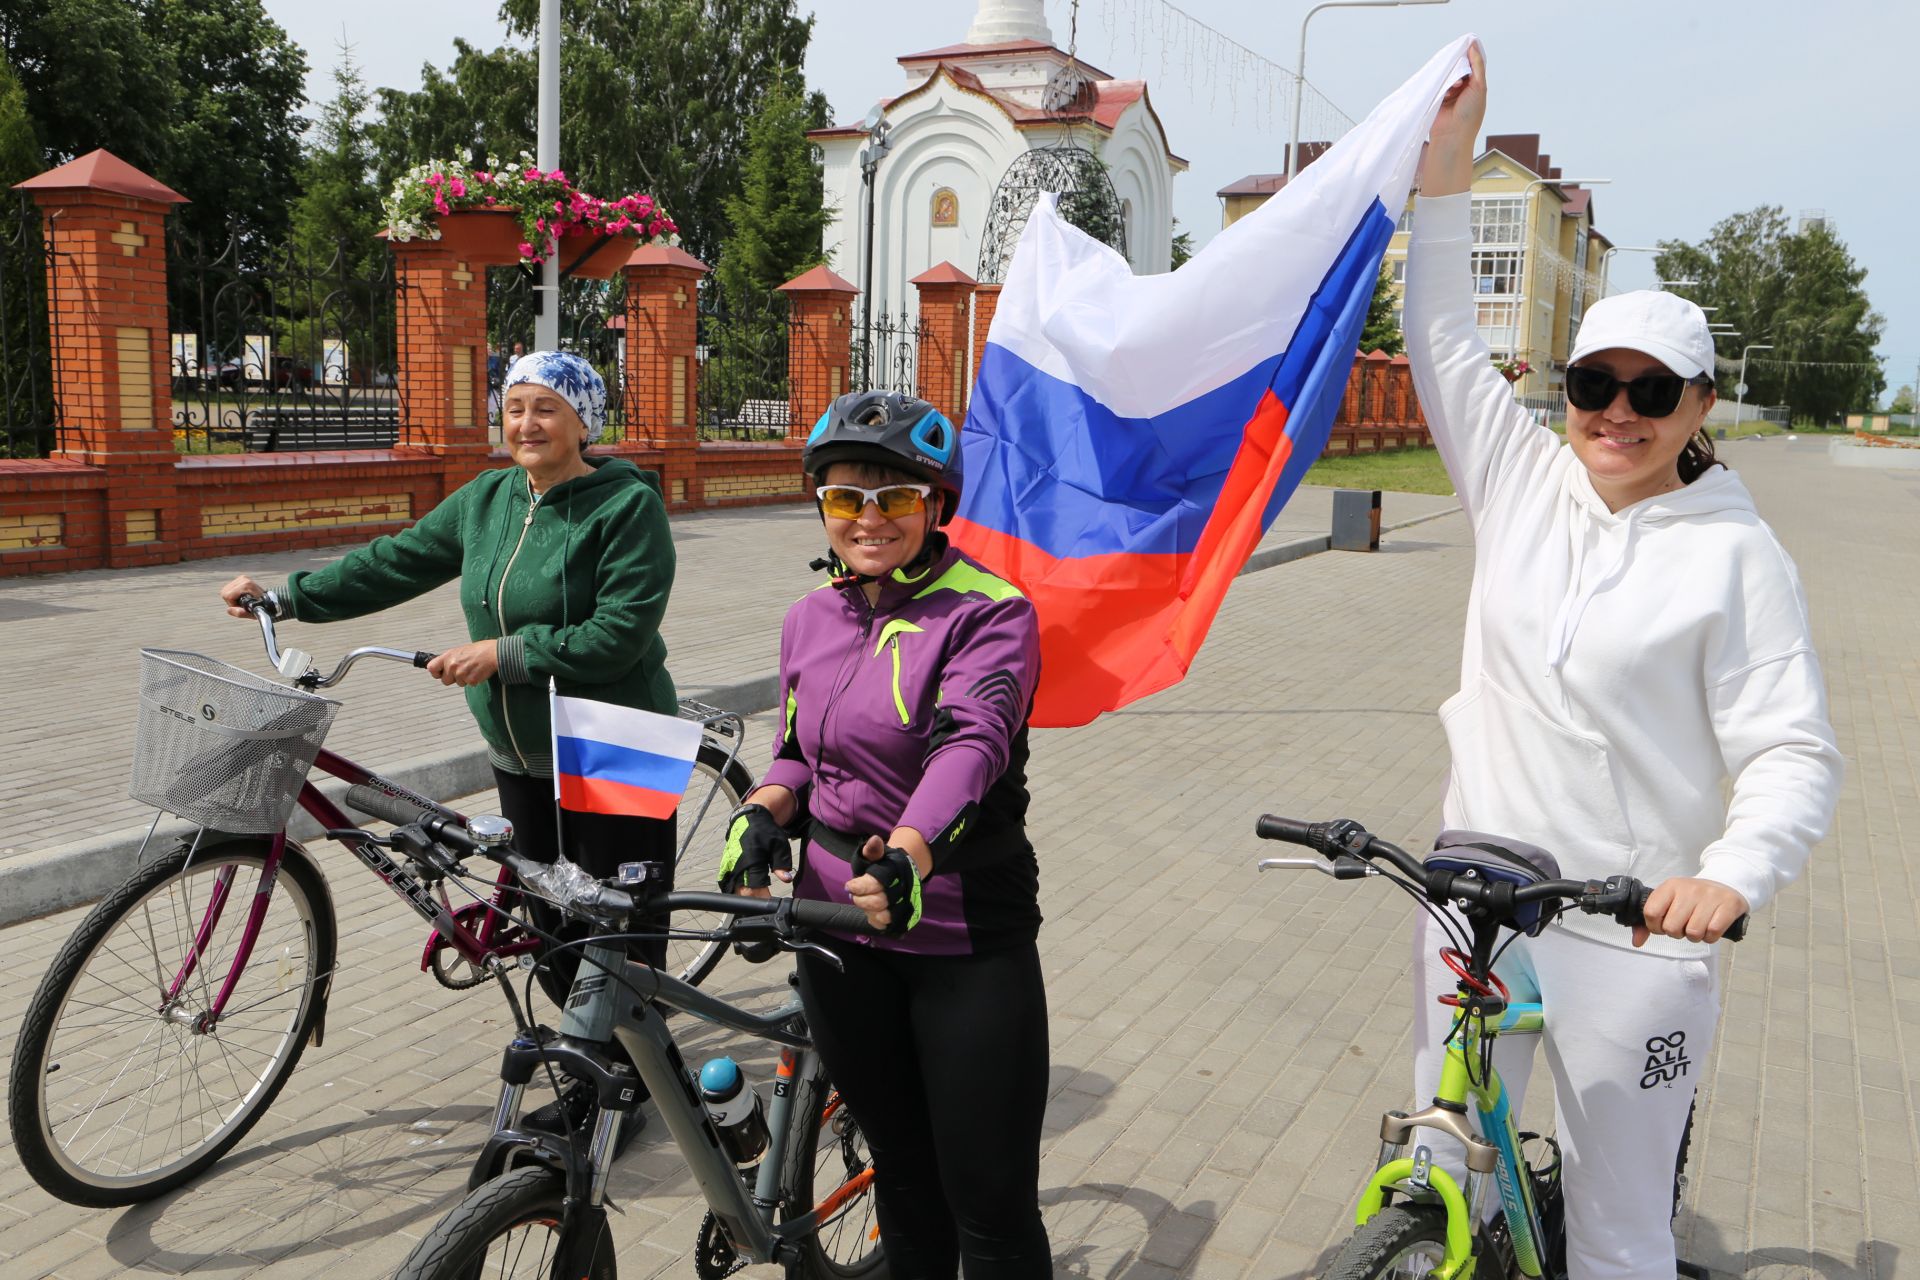 В День России около сотни алексеевцев приняло участие в велопробеге